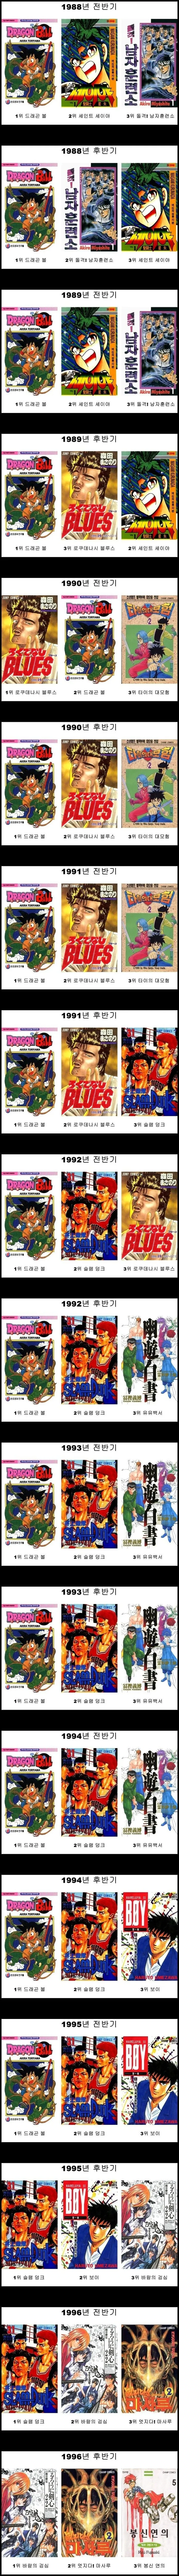 일본 주간소년점프 년도별 만화 판매량 순위정보 1987~1996년 정보